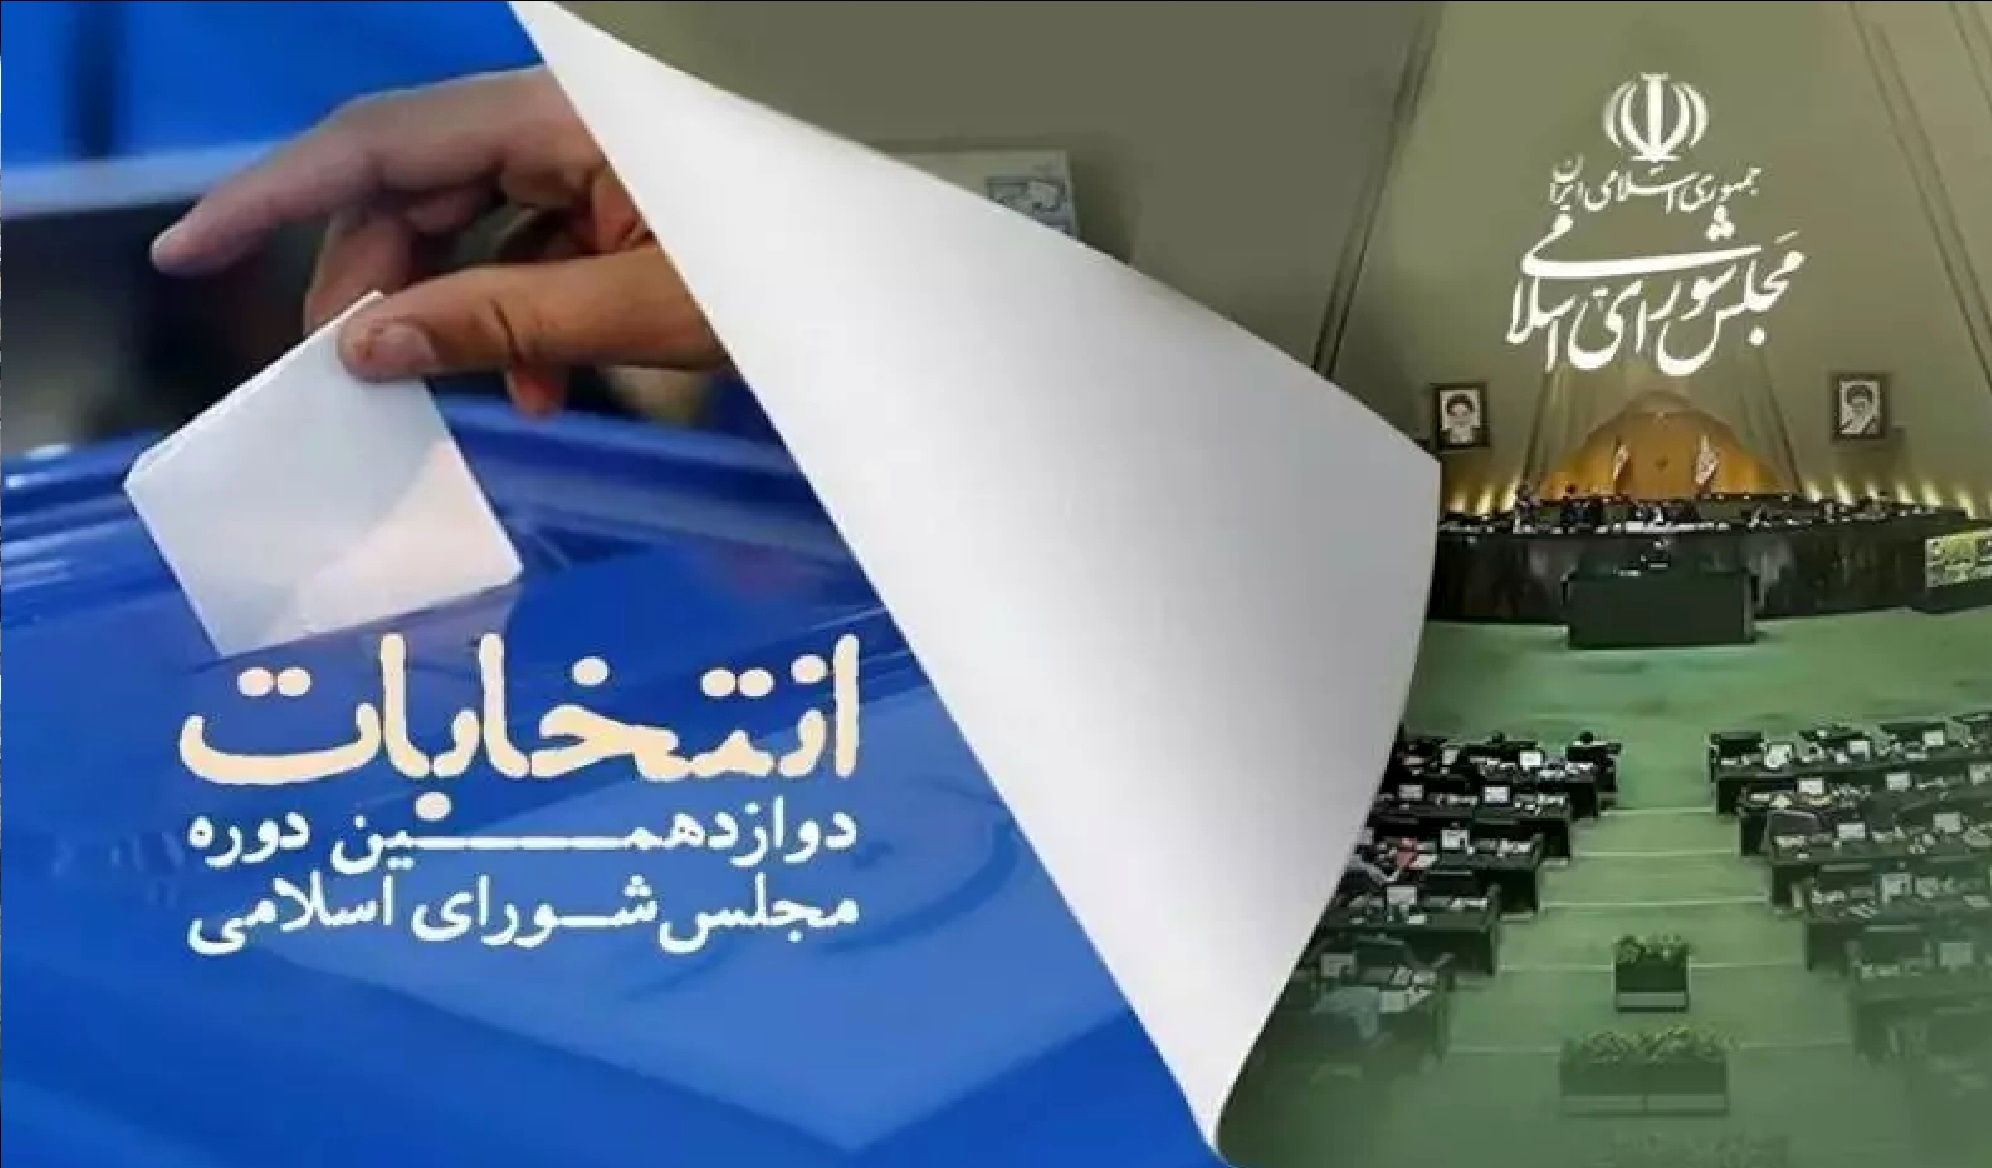 لیست انتخاباتی جبهه مستقلین واعتدالگرایان ایران رونمایی شد